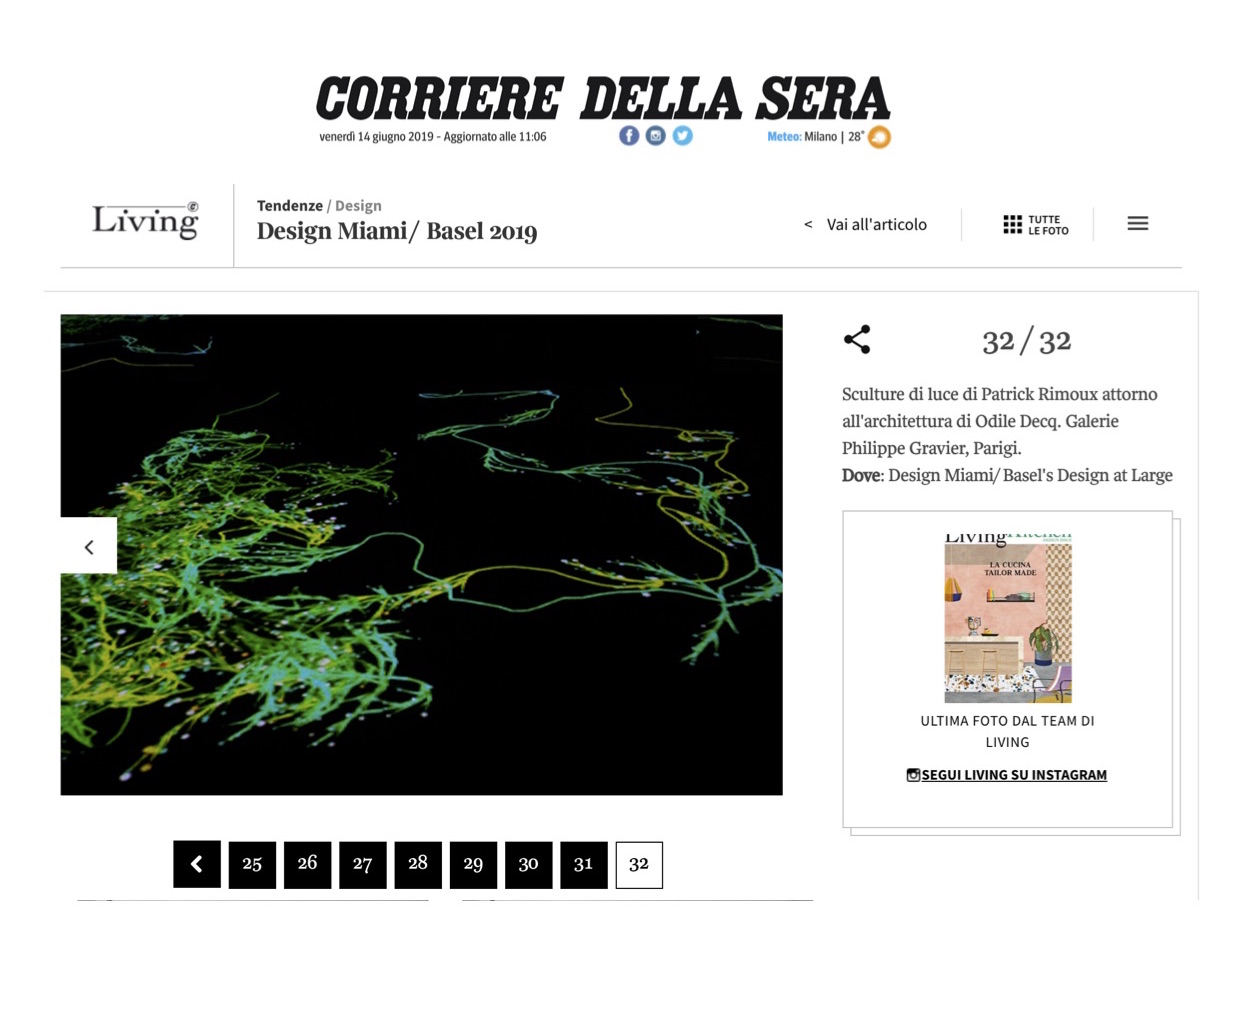 Corriere Della Sera – Design Miami/ Basel 2019 (At Large)